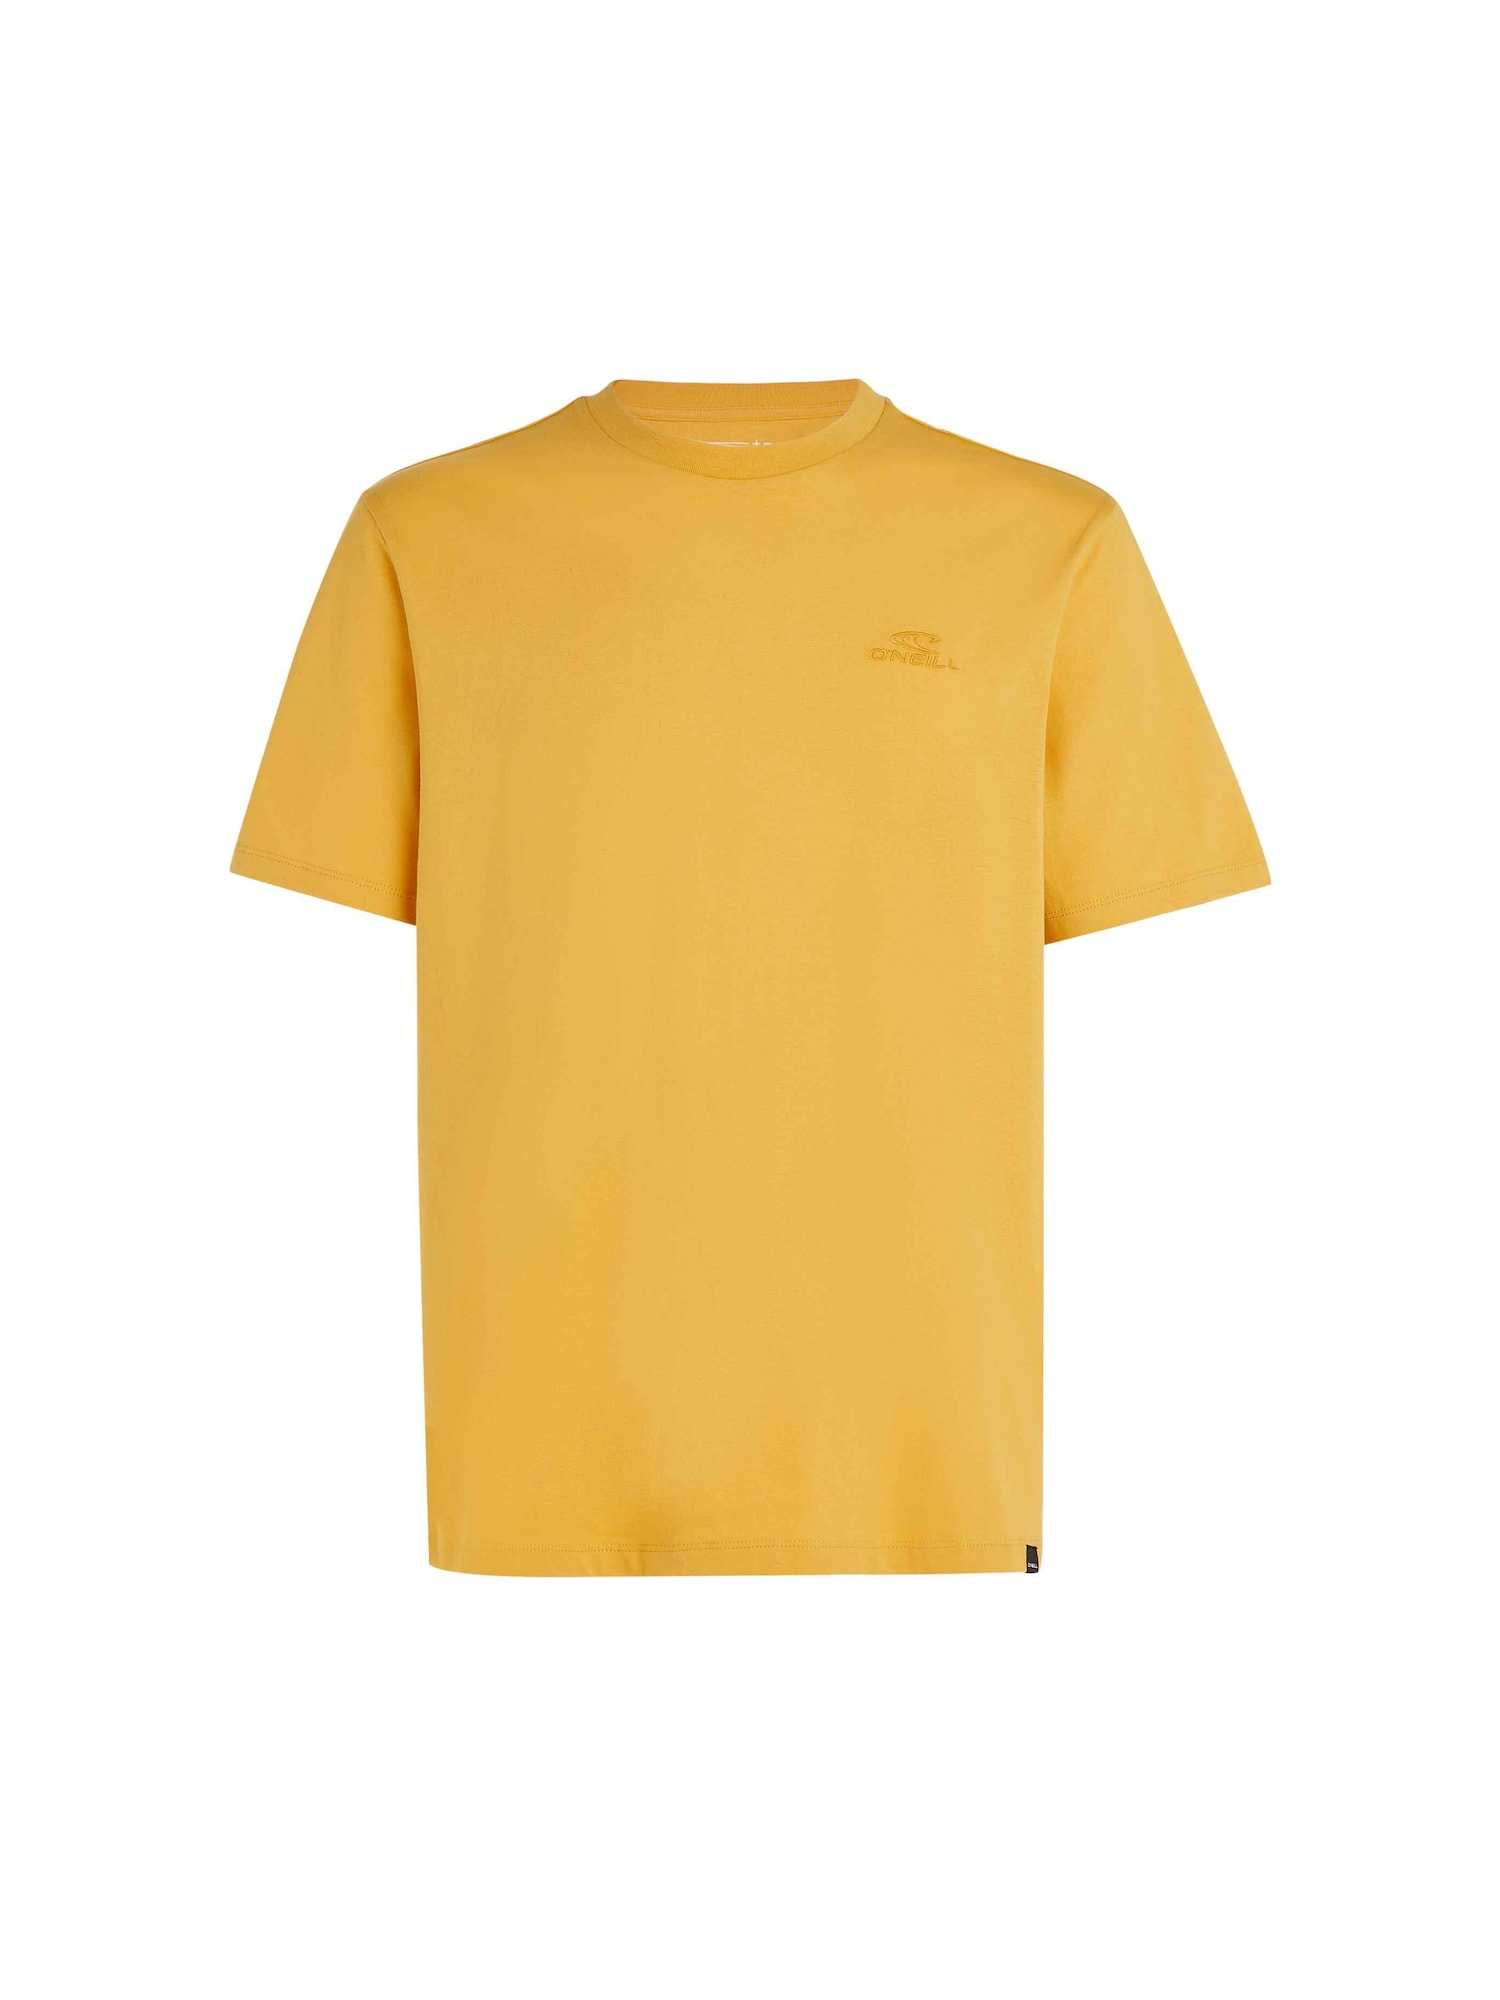 O'NEILL Marškinėliai šafrano spalva / tamsiai geltona